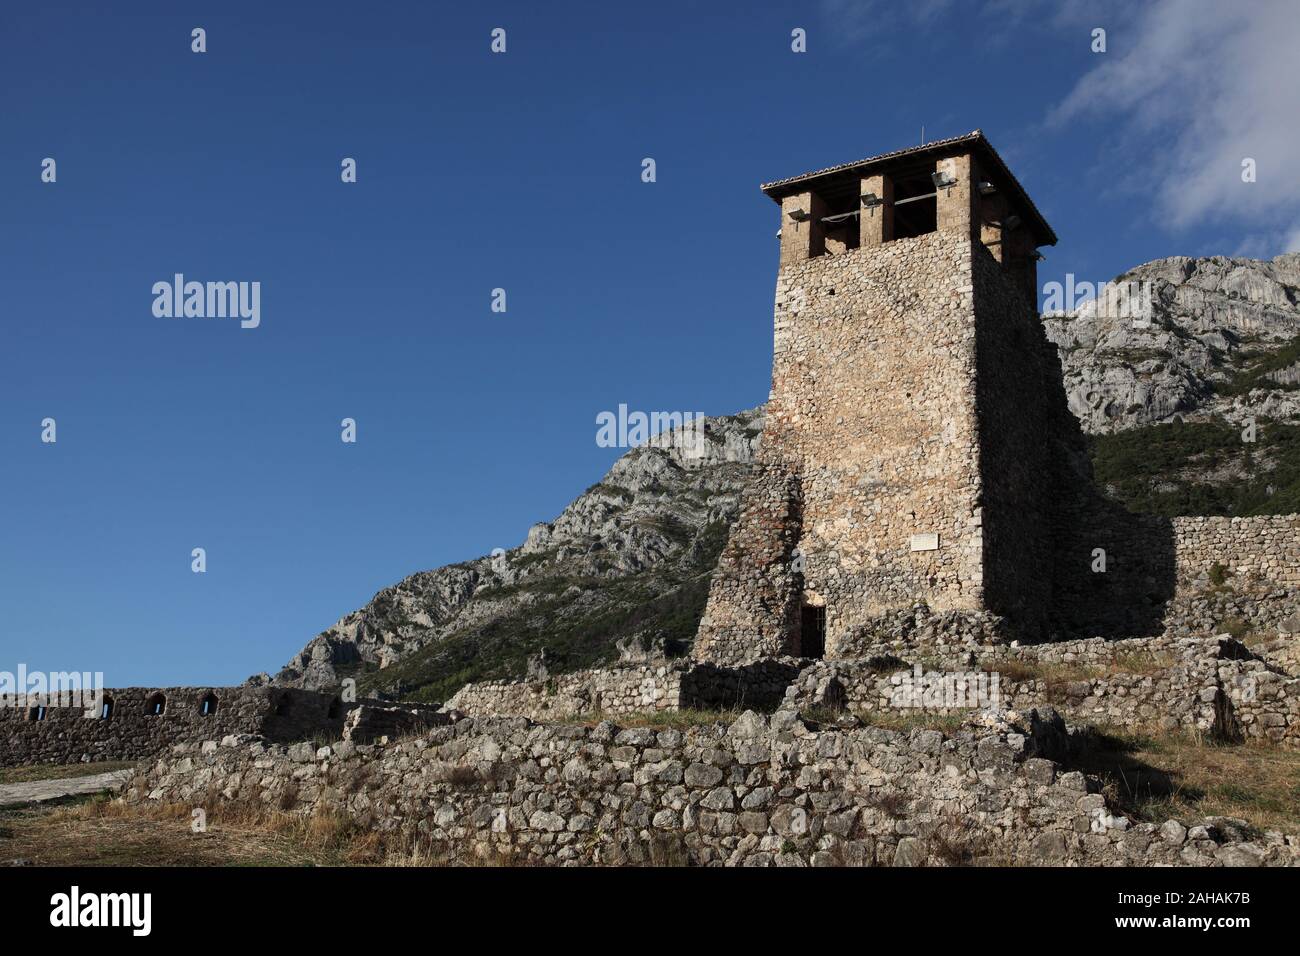 Der Turm, ursprünglich ein Aussichtsturm und Signalisierung Post innerhalb der Mauern der Burg Kruja Kruja, Albanien, durch Skanderberg während seiner Herrschaft verwendet. Stockfoto